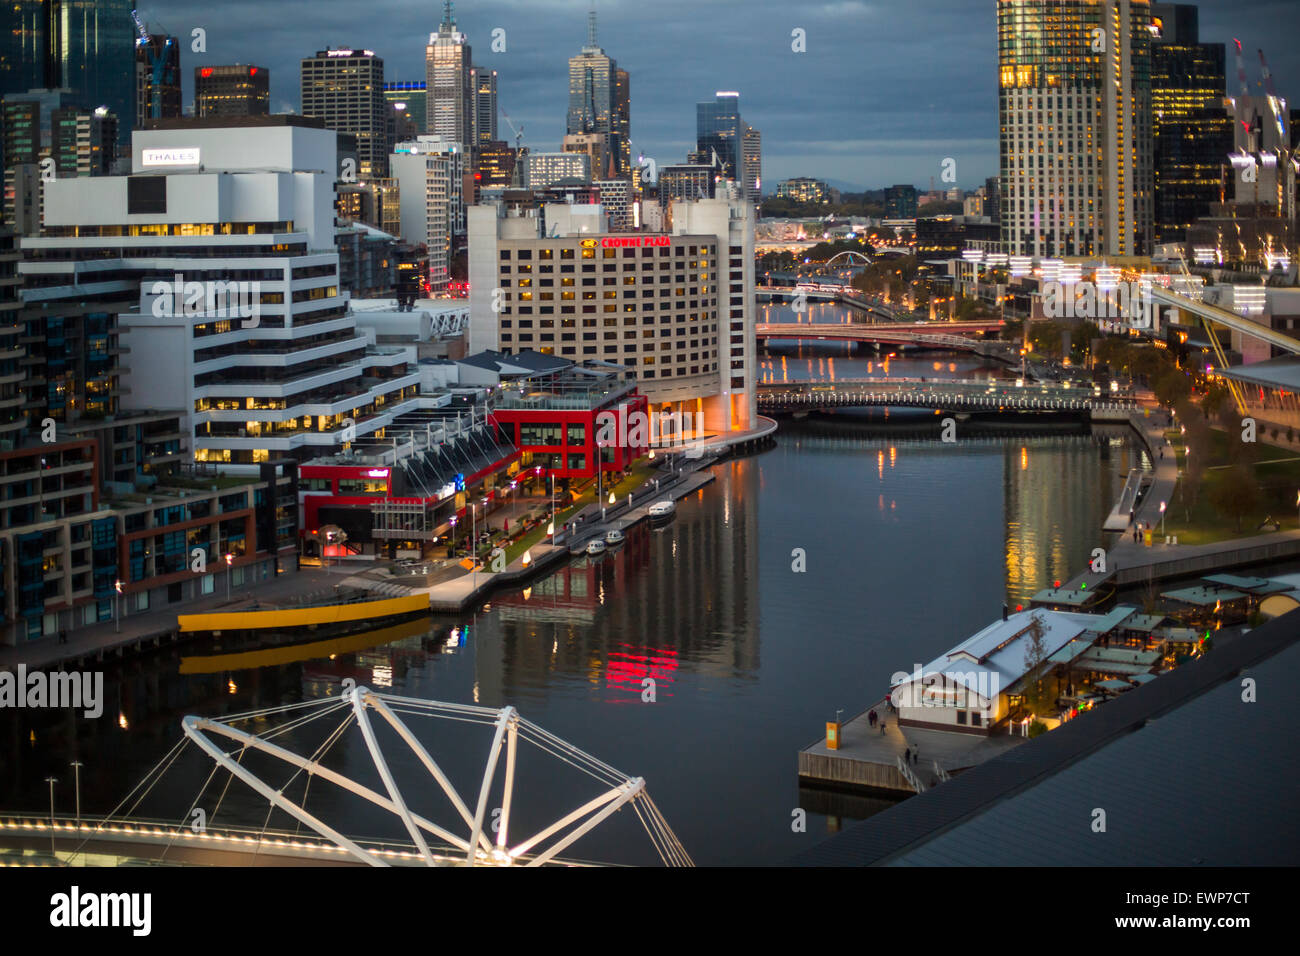 Downtown Melbourne, Australia, at night Stock Photo